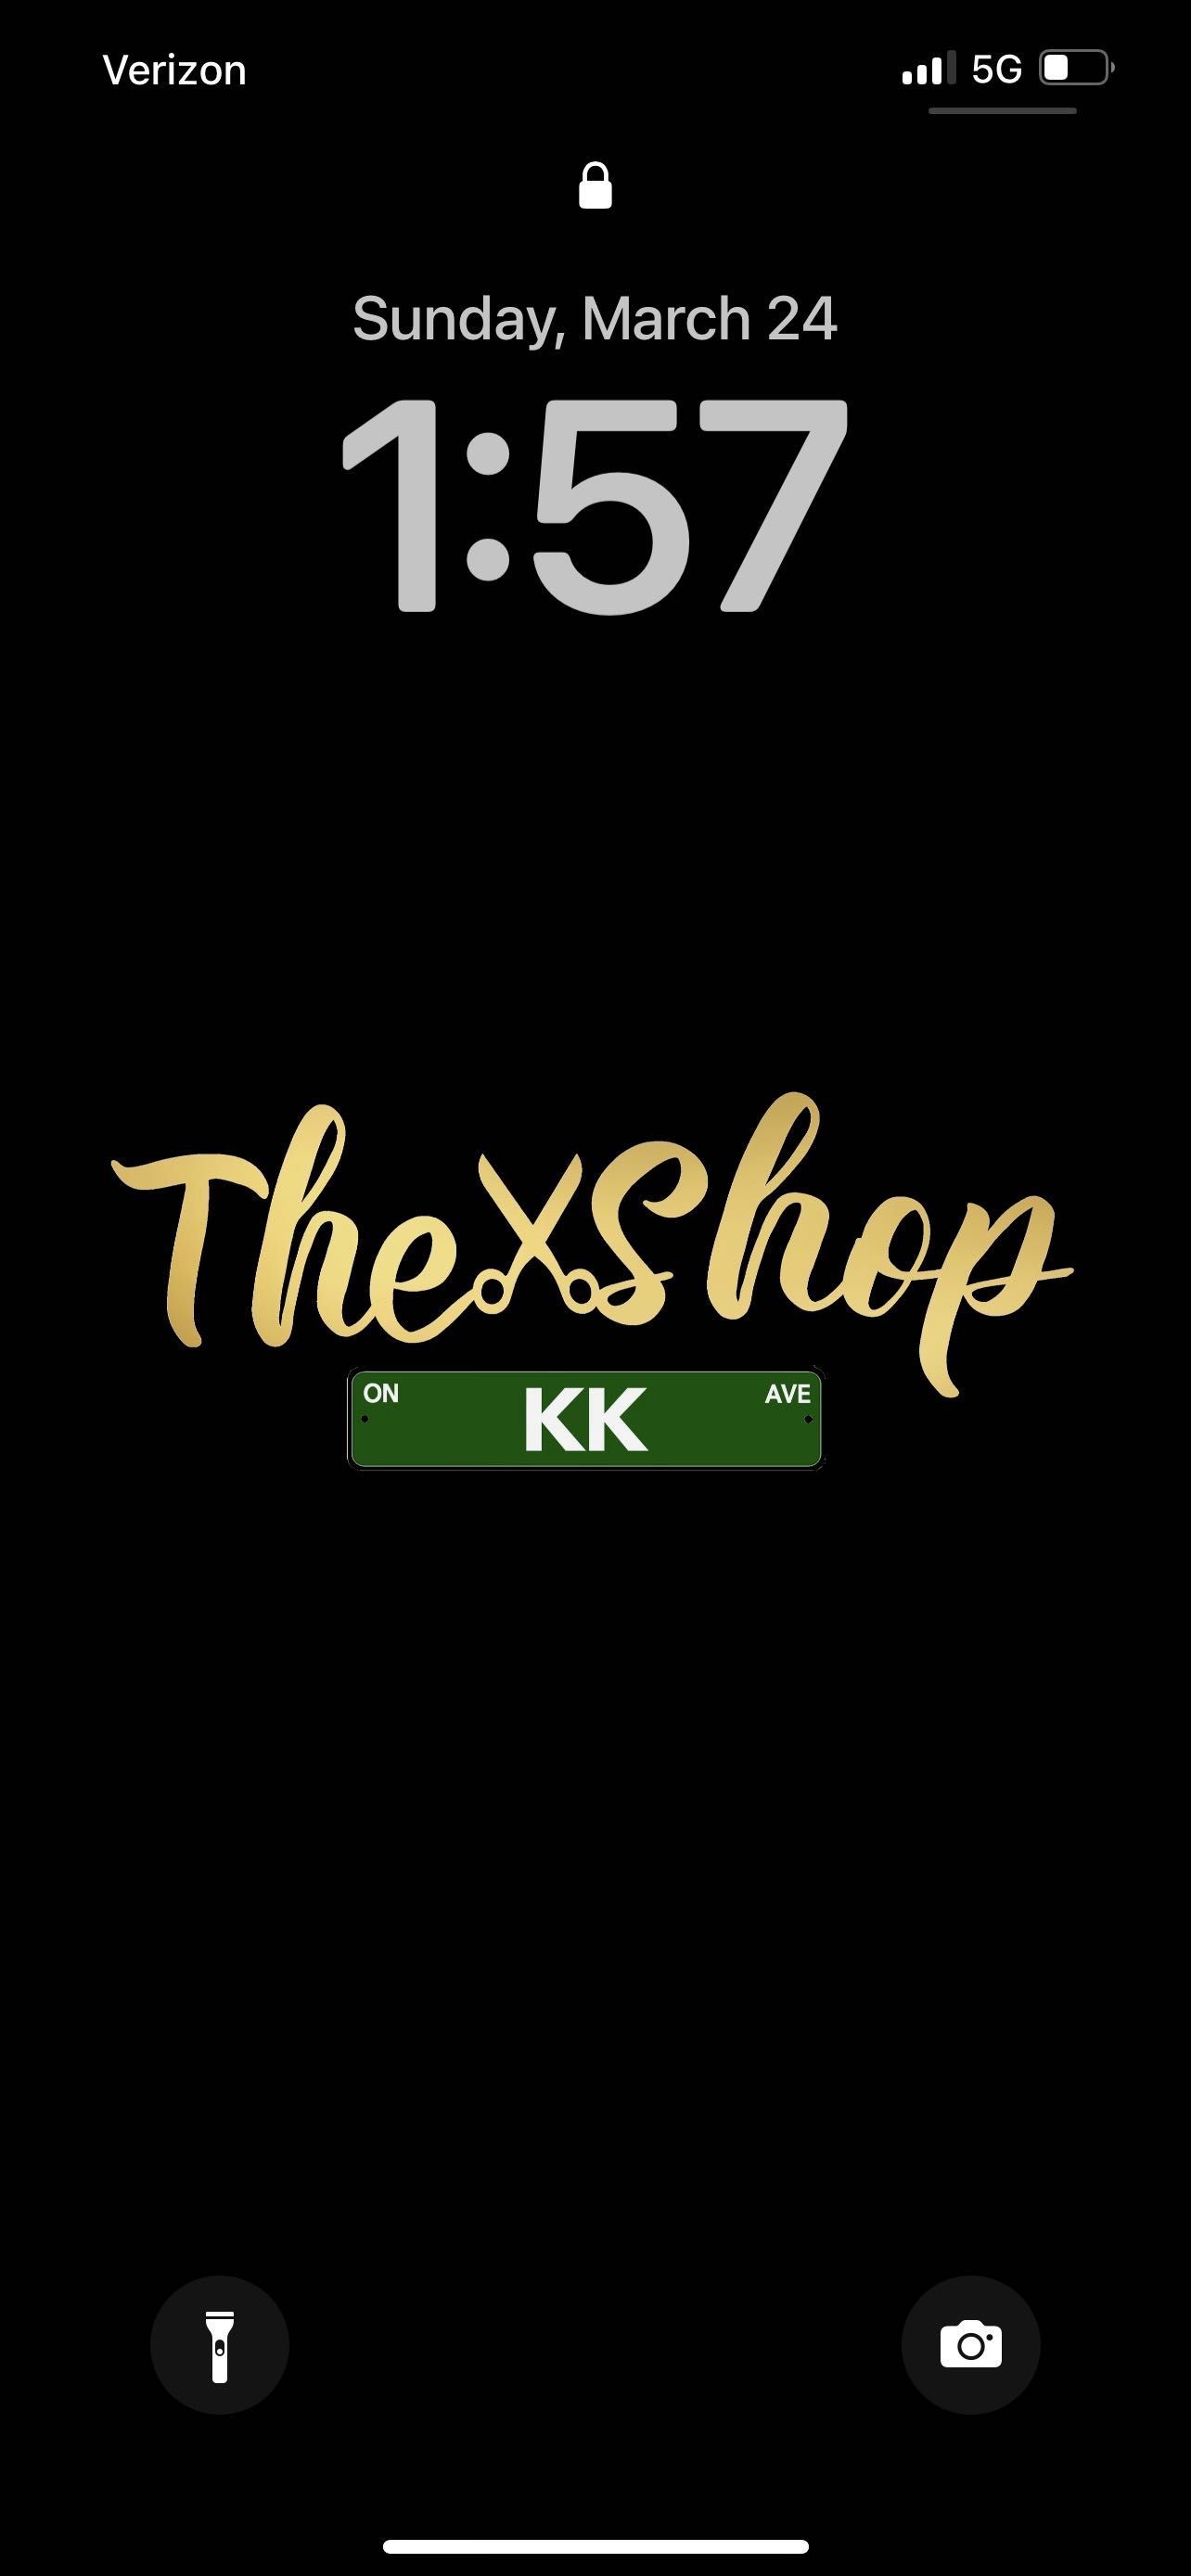 The Shop on KK, 2340 S Kinnickinnic Ave, Milwaukee, 53207